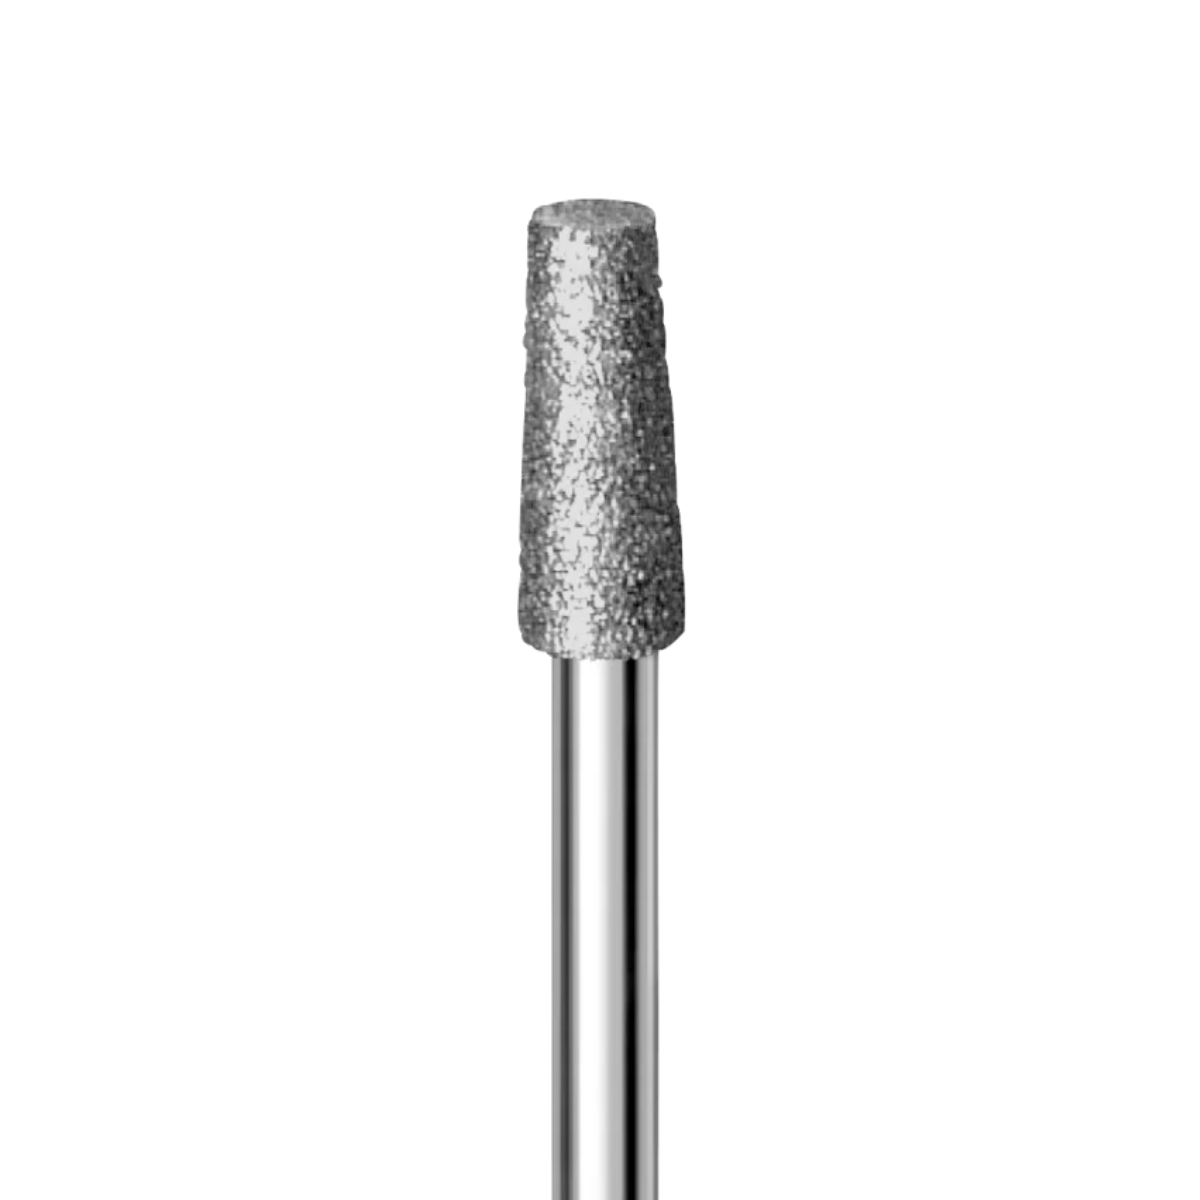 BUSCH Diamond milling cutter 4 mm, medium coarse, 20,000 rpm, 1 pc.